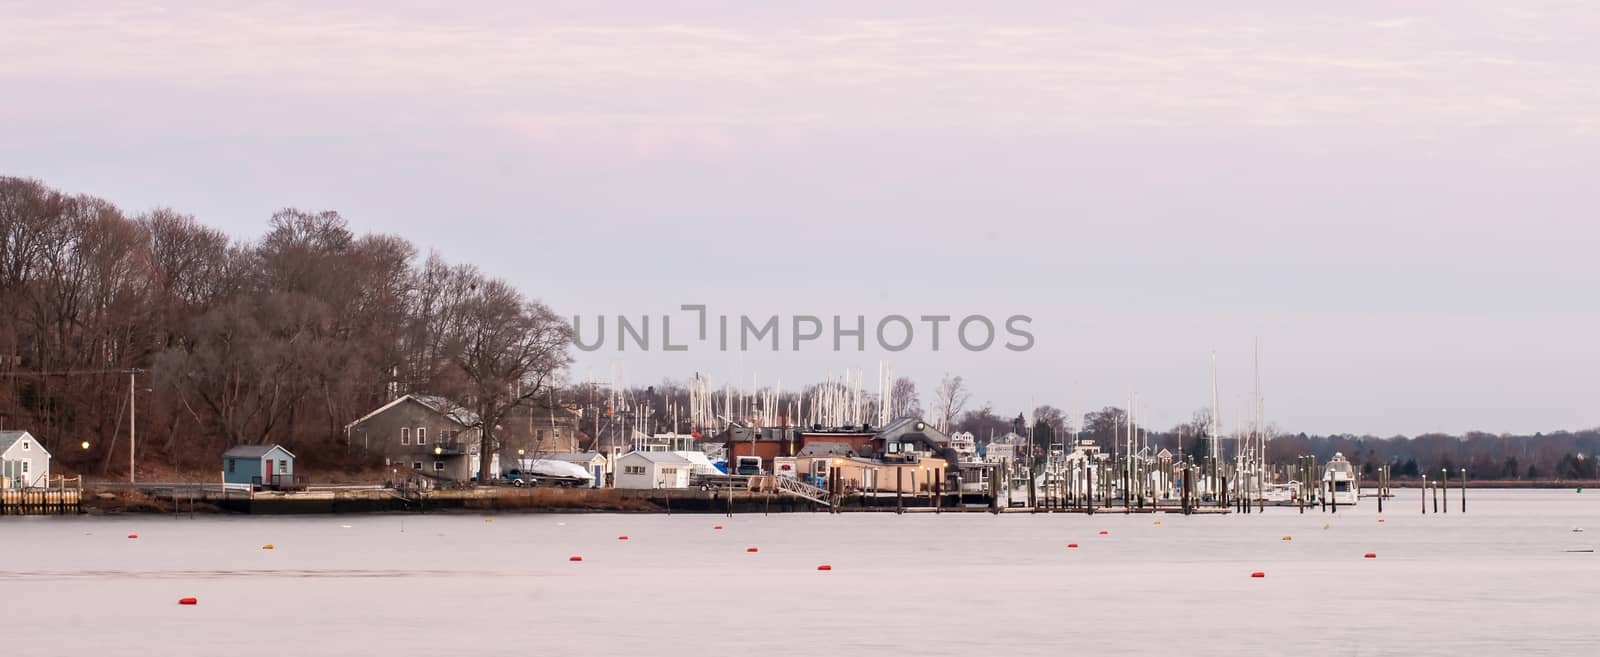 Greenwich Bay Harbor Seaport in Rhode Island